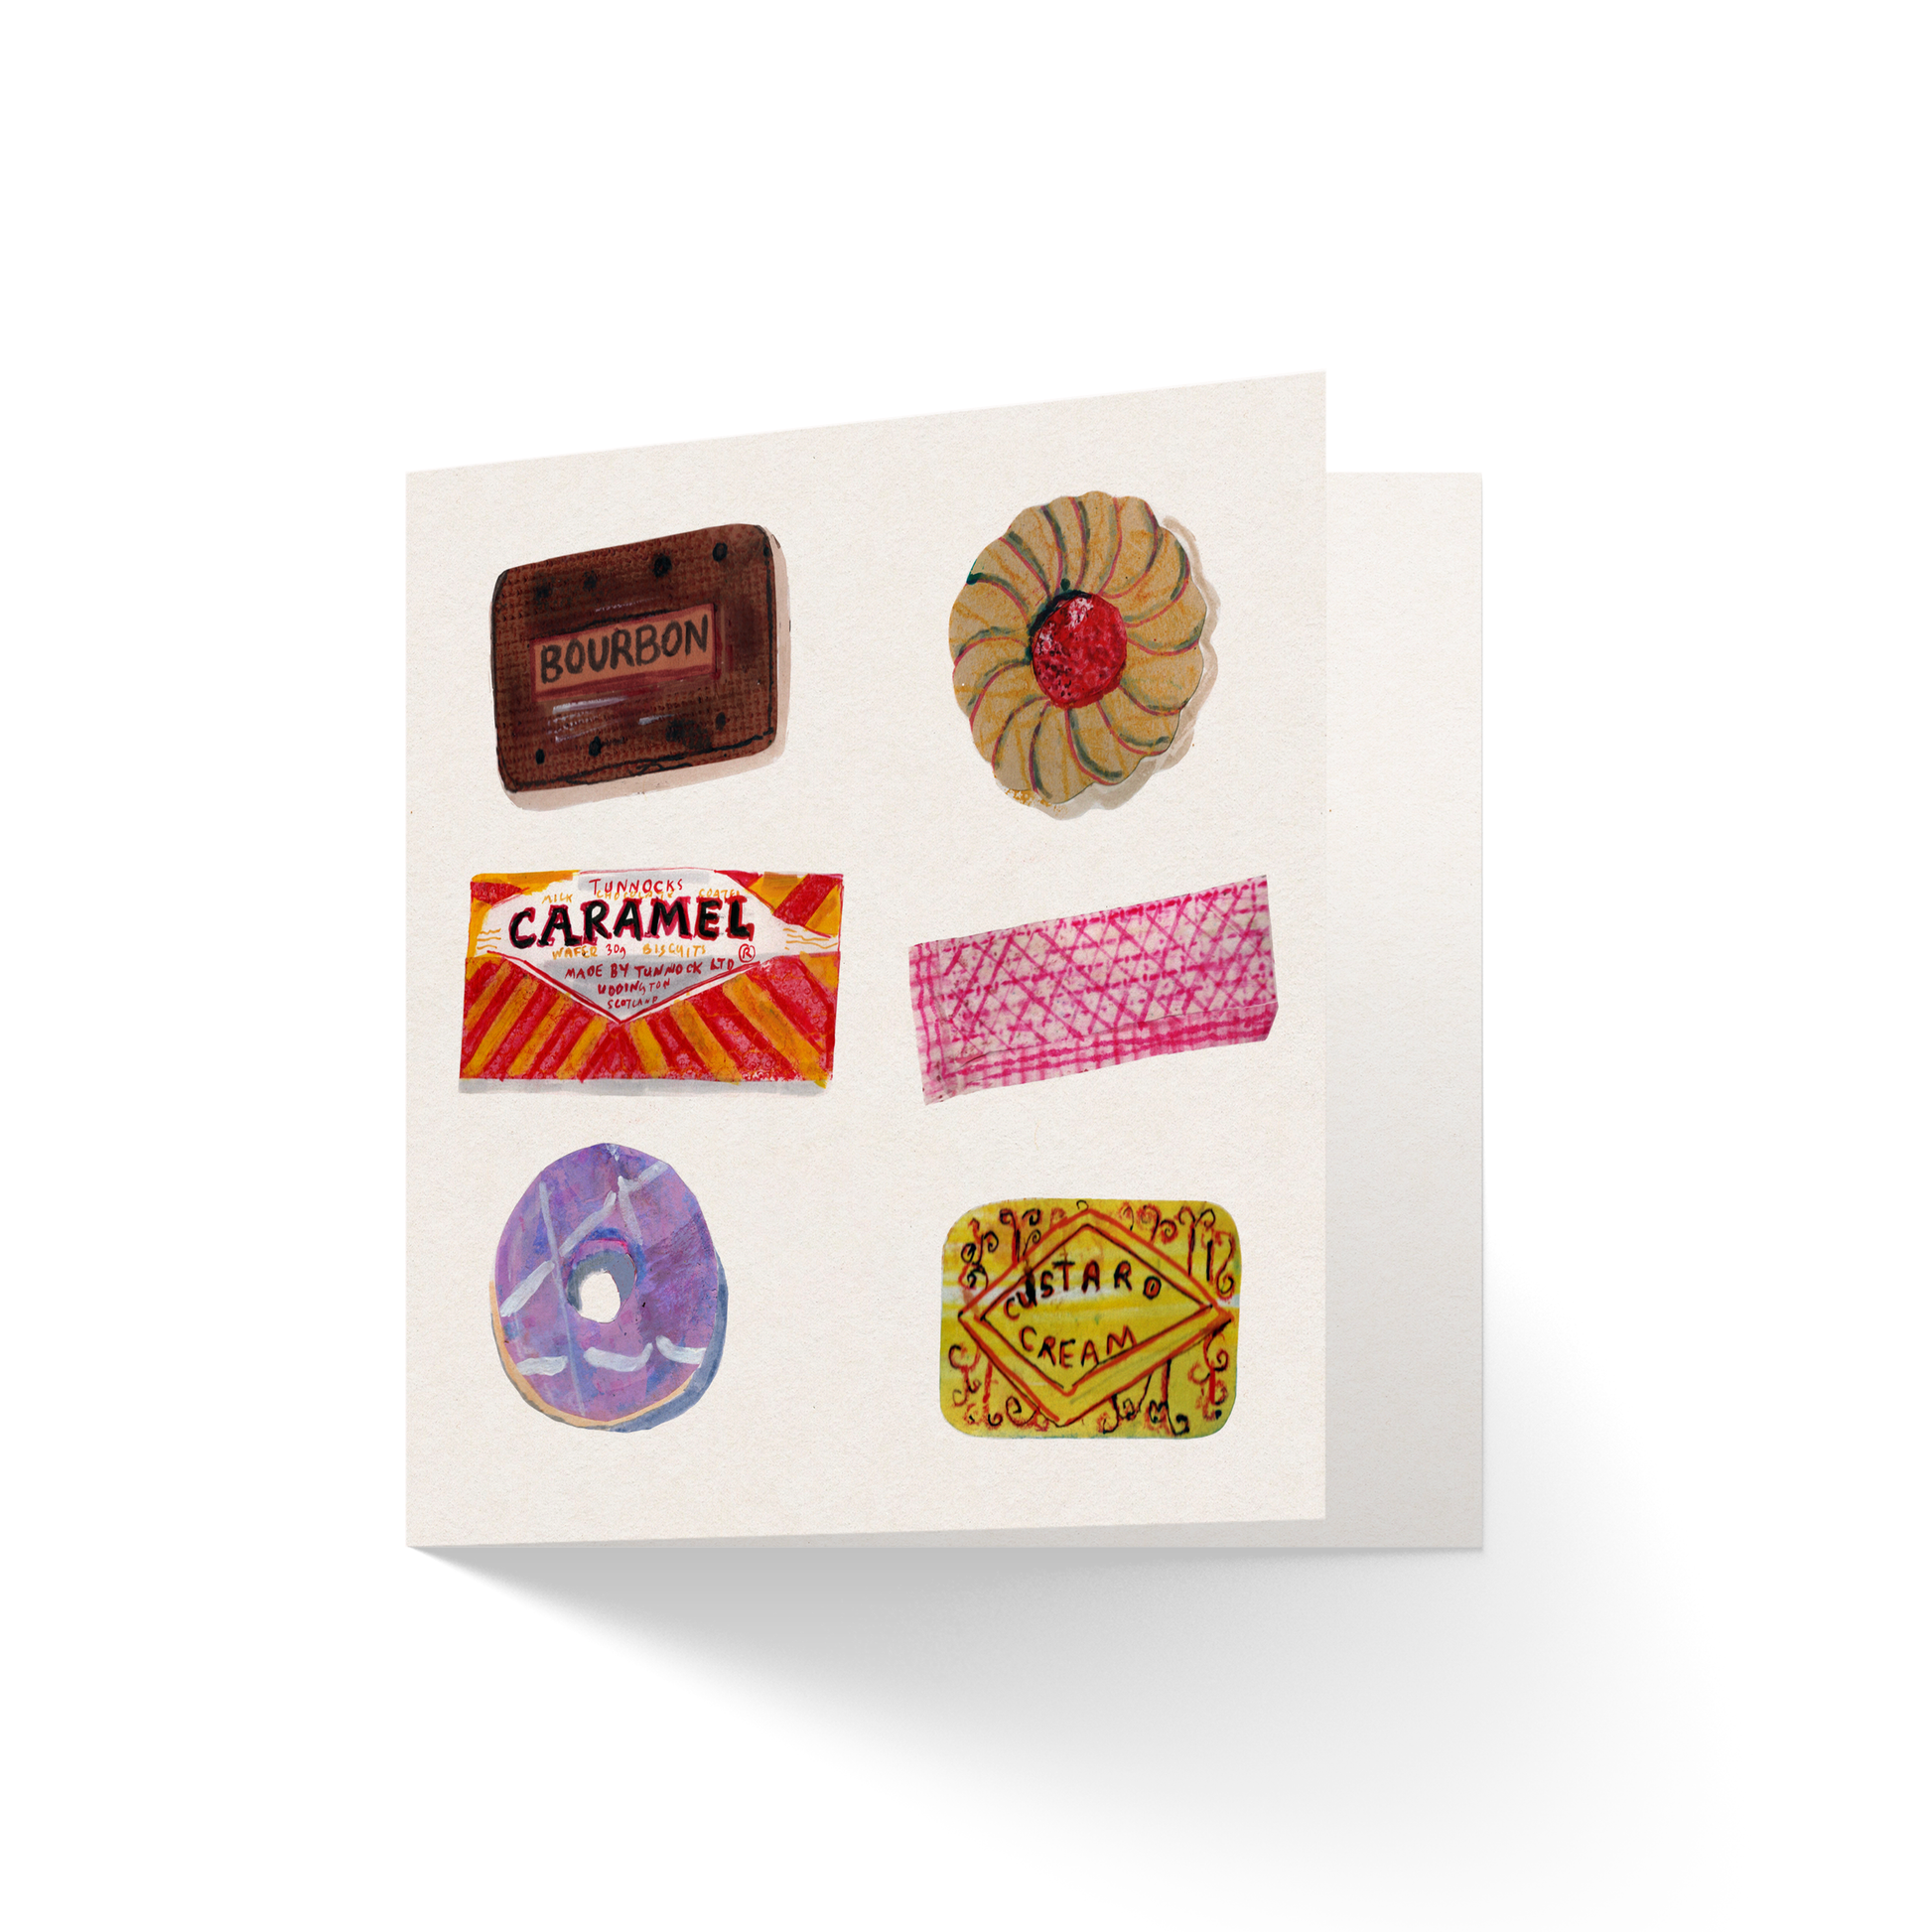 sweet treats greetings card - Greetings Card - Sarah Millin